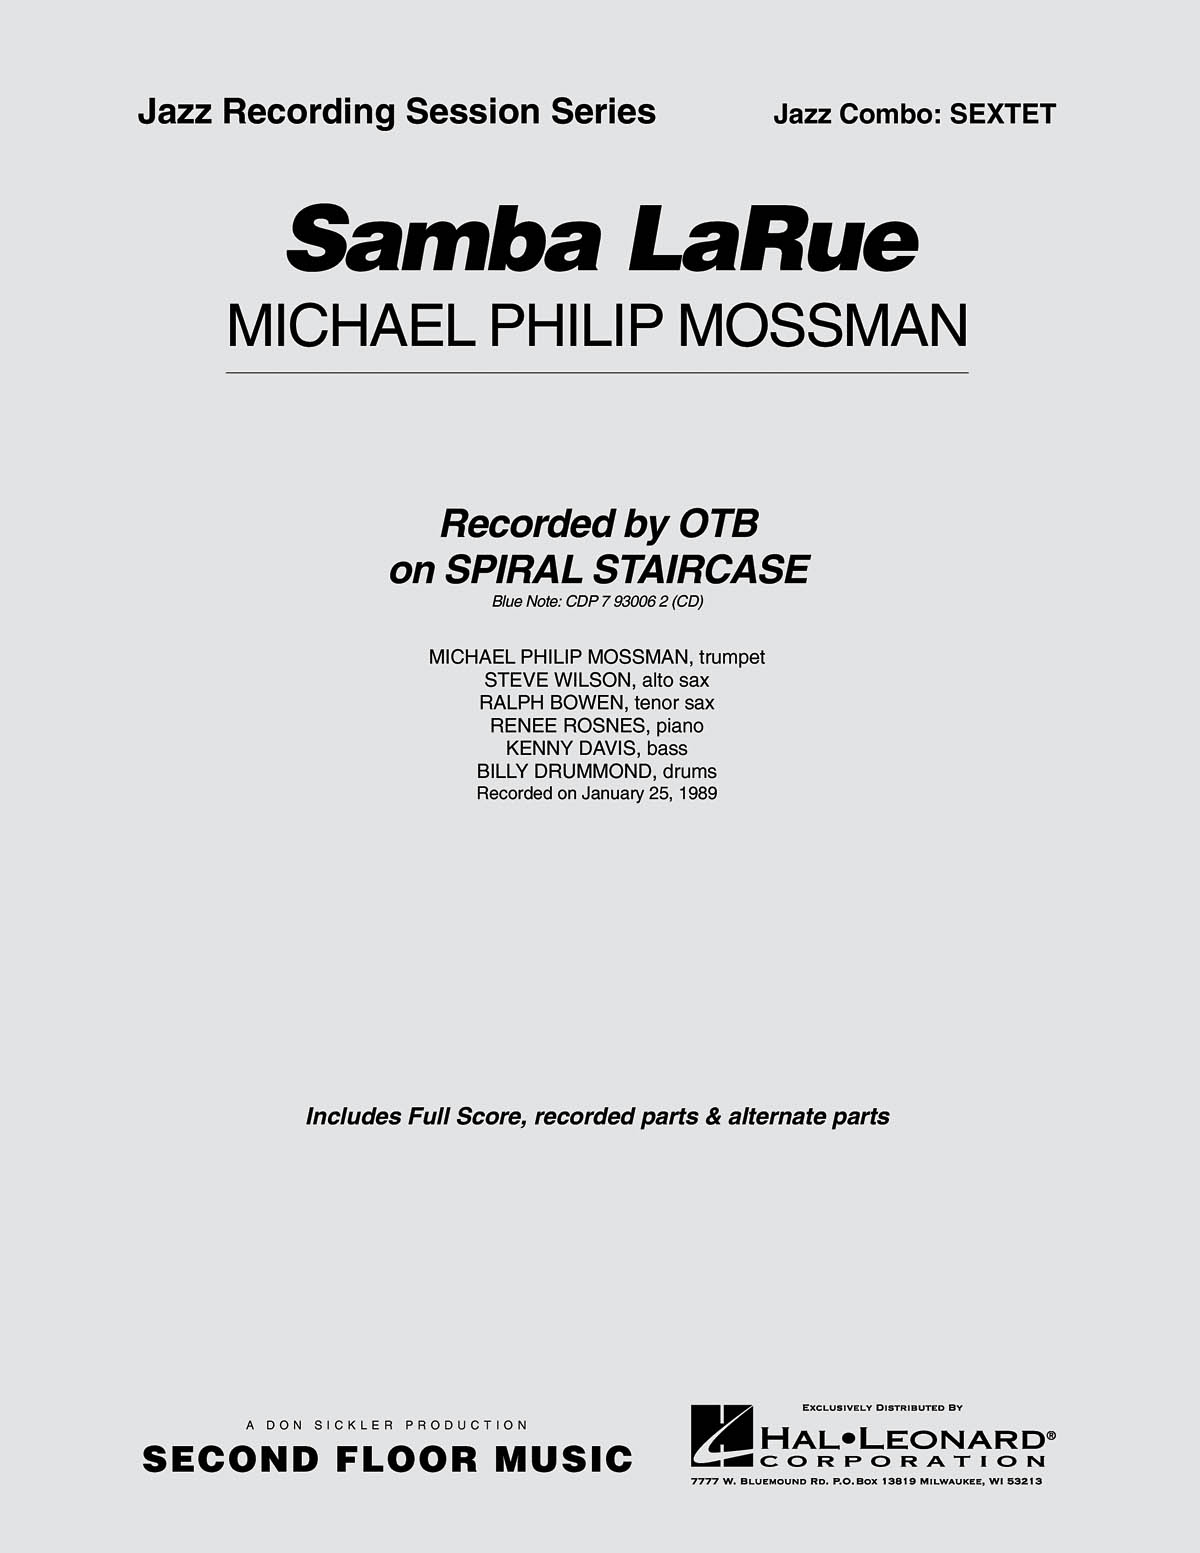 Samba Larue – Sextet